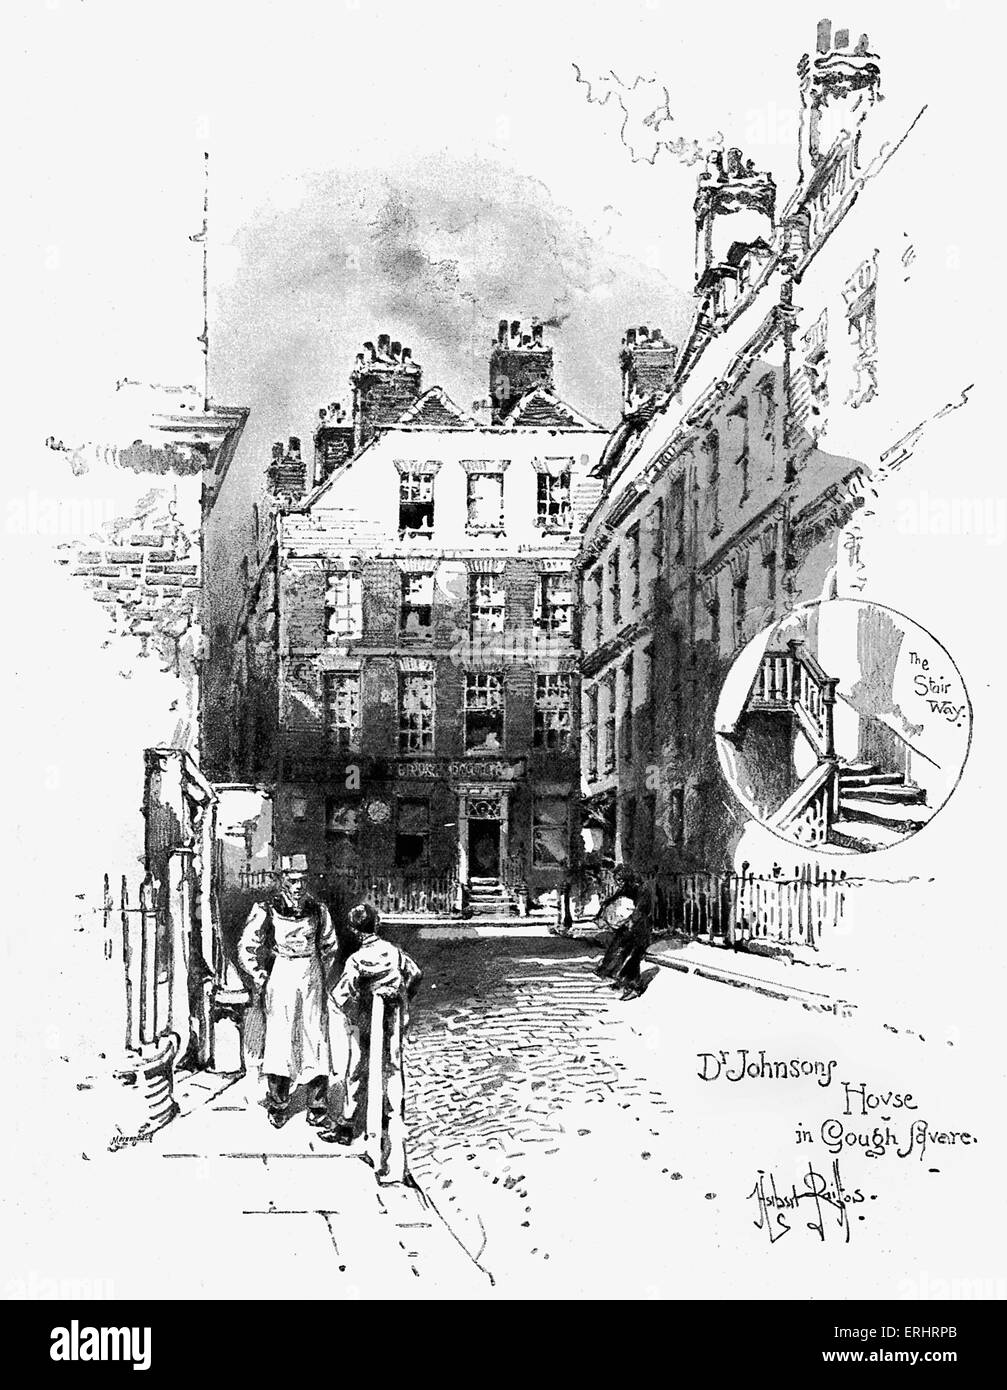 Samuel Haus in Gough Square - 1748-1749. Zeichnungen von Herbert Railton. SJ:English Essayist, Biograf, Stockfoto